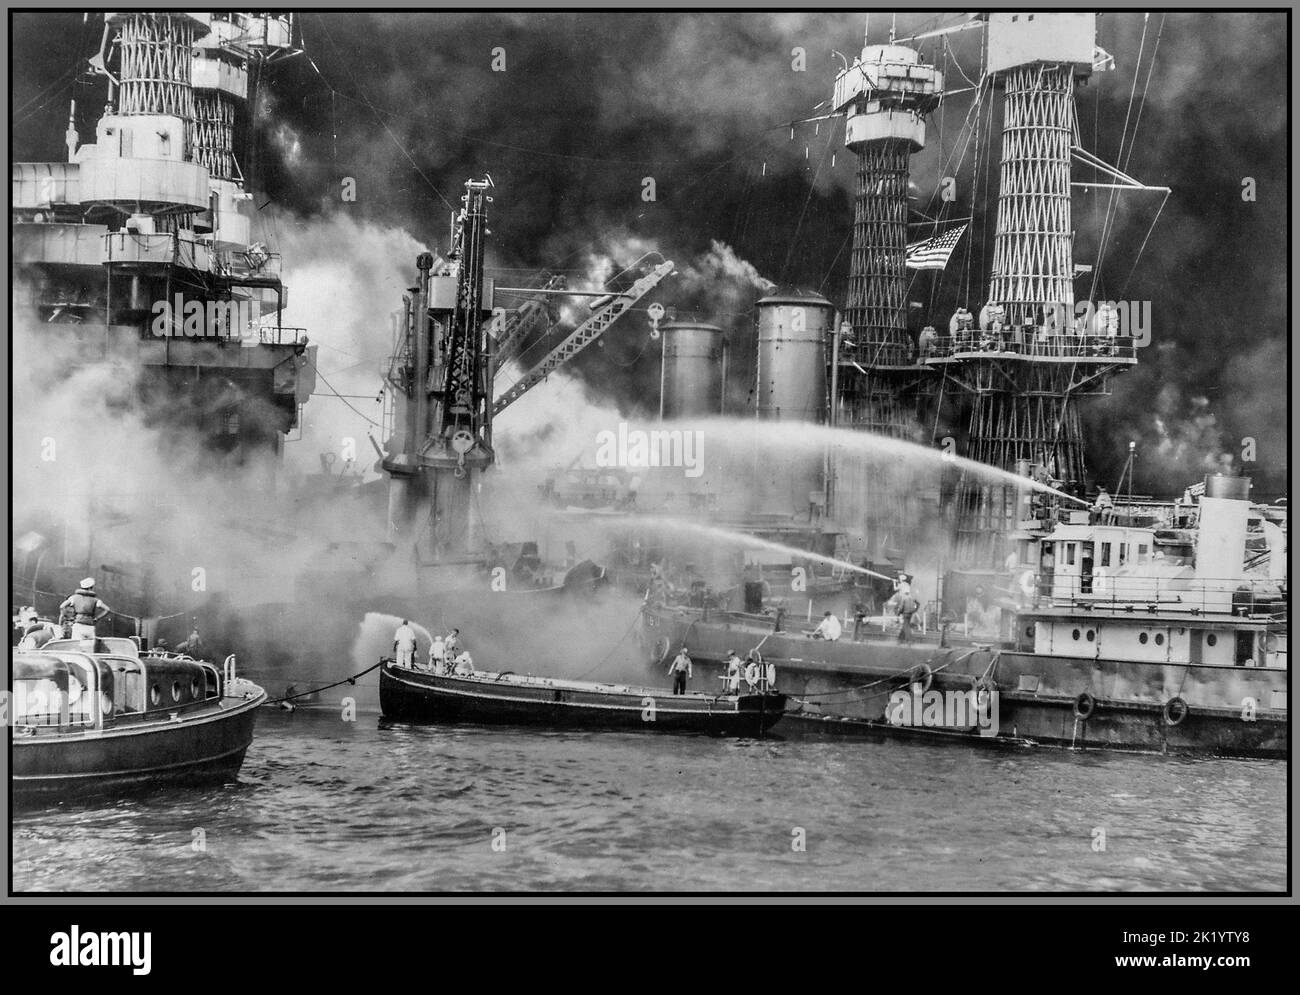 Attaque japonaise de Pearl Harbor, Pearl Harbor prise par surprise, lors de l'attaque aérienne japonaise. USS WEST VIRGINIA s'enflamme avec des efforts frénétiques et spectaculaires pour éteindre les flammes. WW2 Japon Amérique 7th décembre 1941 le début de la guerre dans le Pacifique Banque D'Images